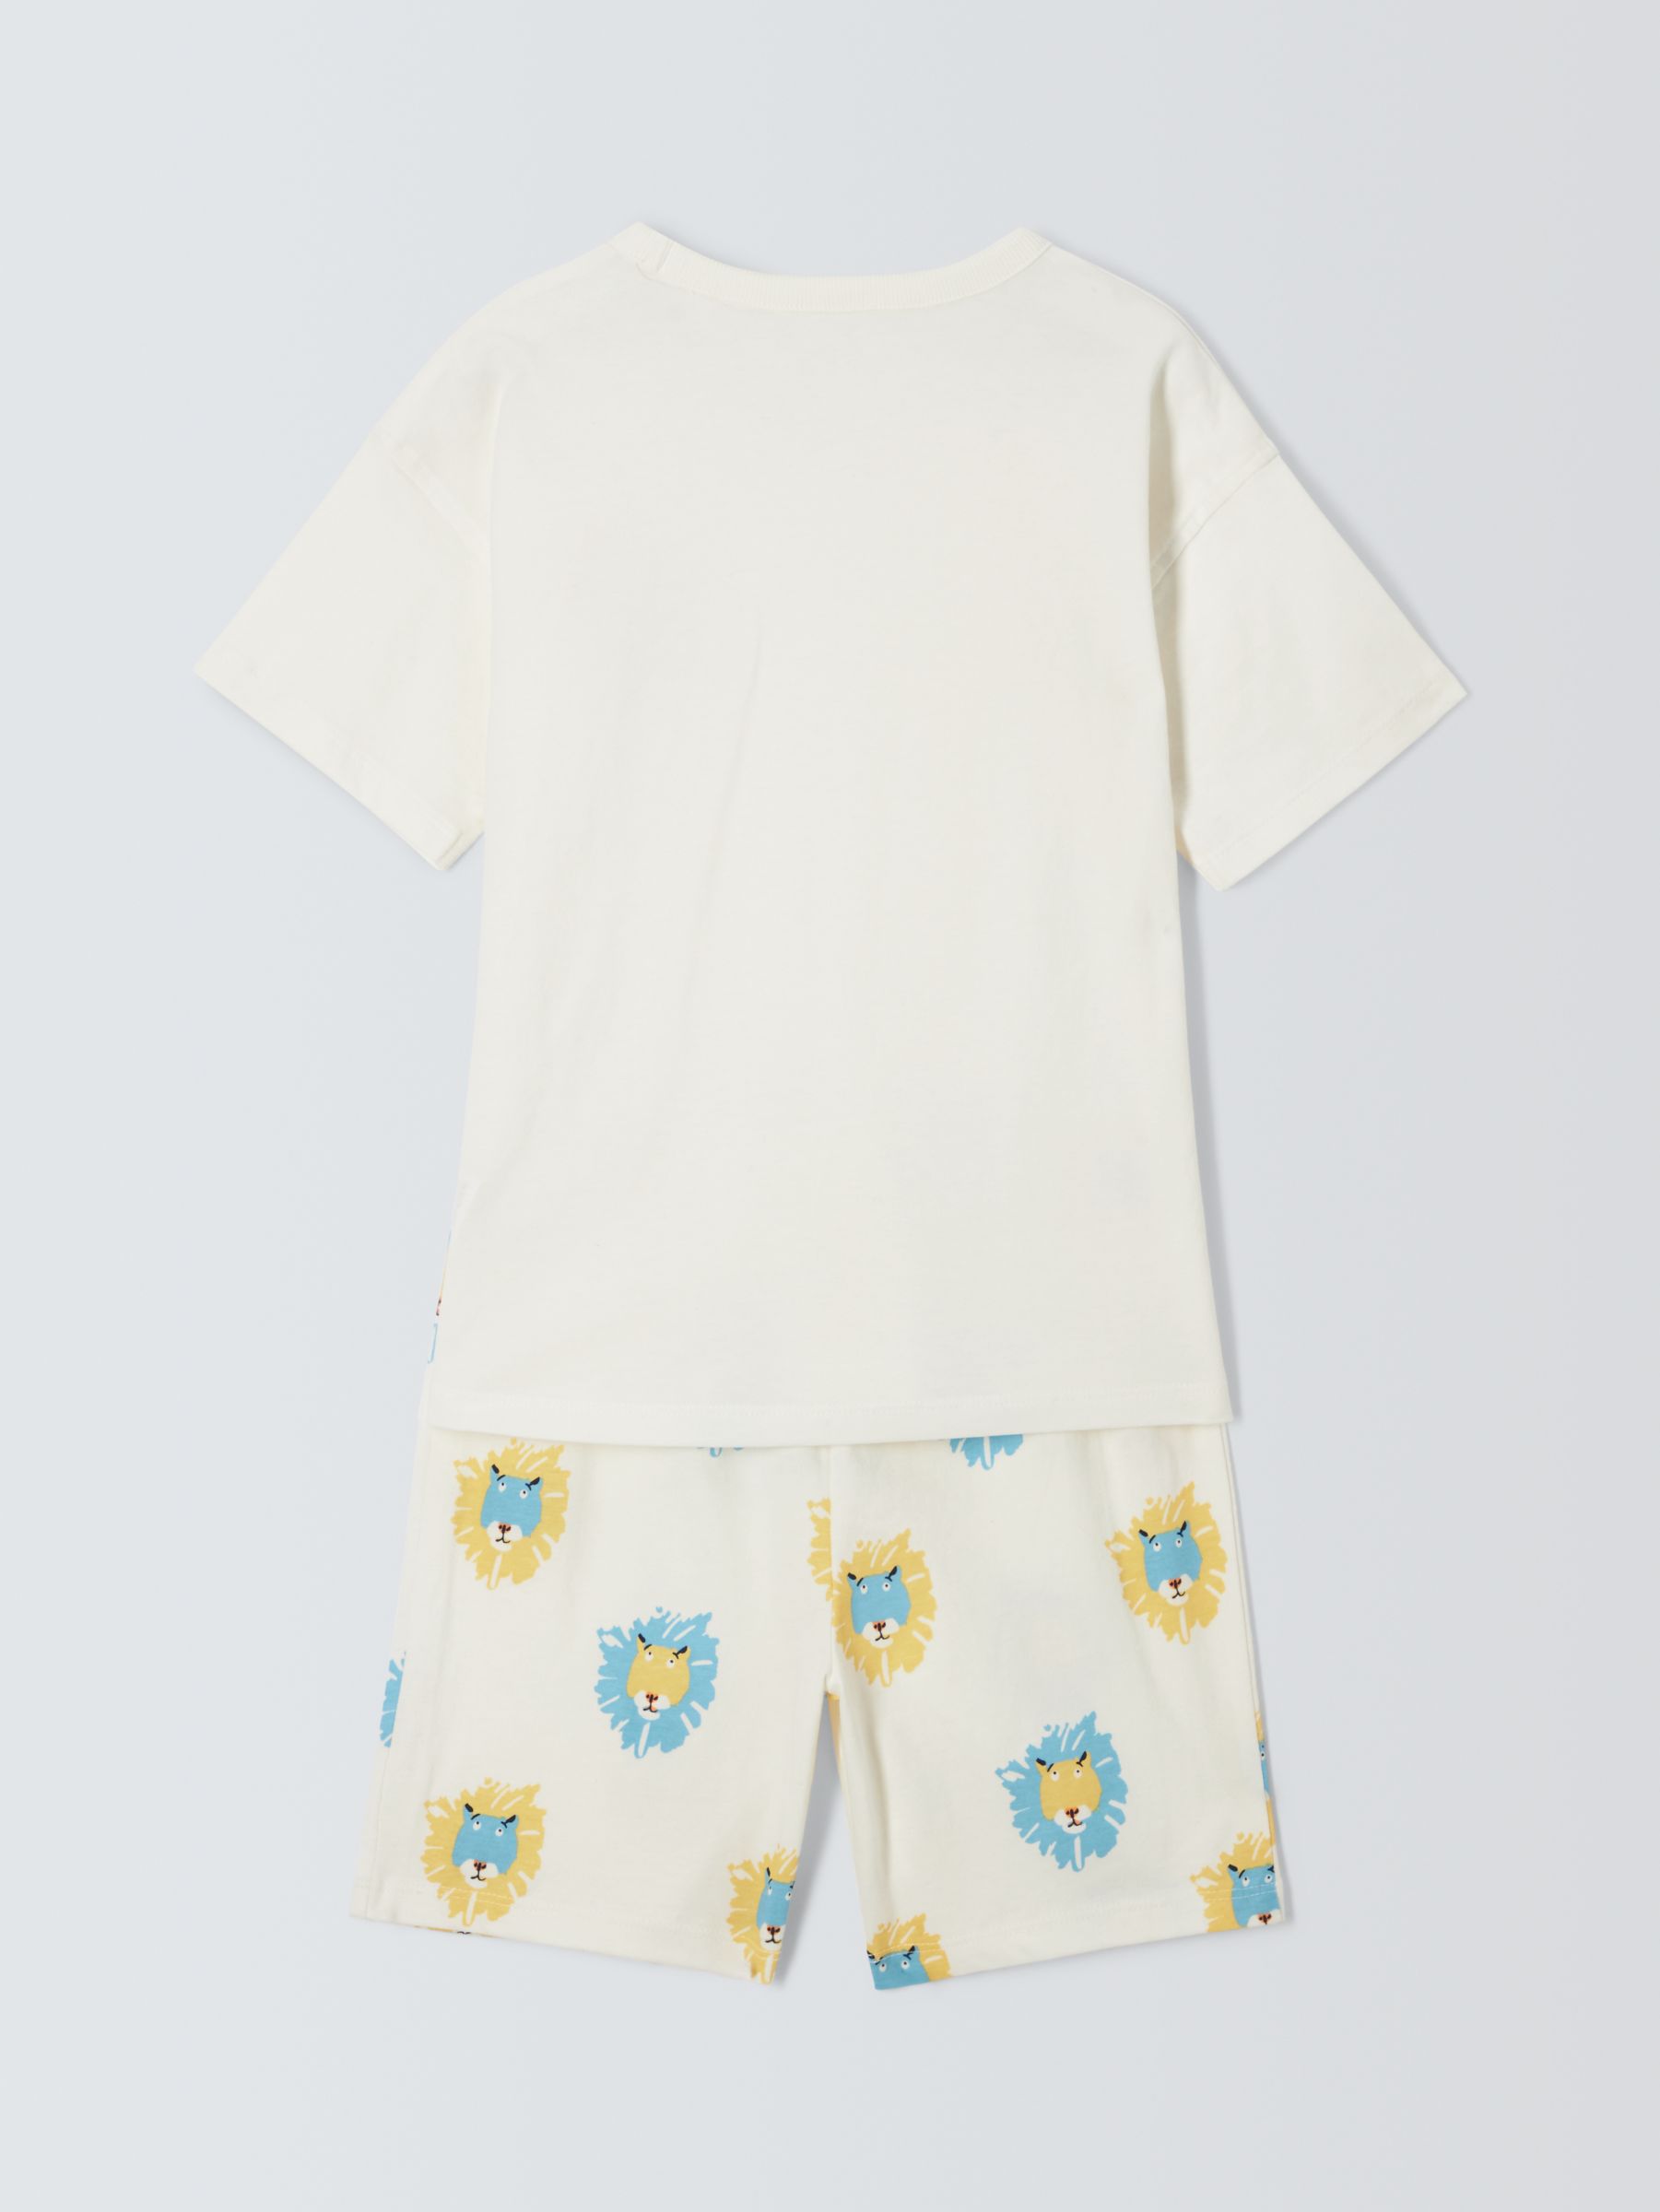 John Lewis ANYDAY Kids' Lion Print Short Pyjamas, White/Multi, 5 years